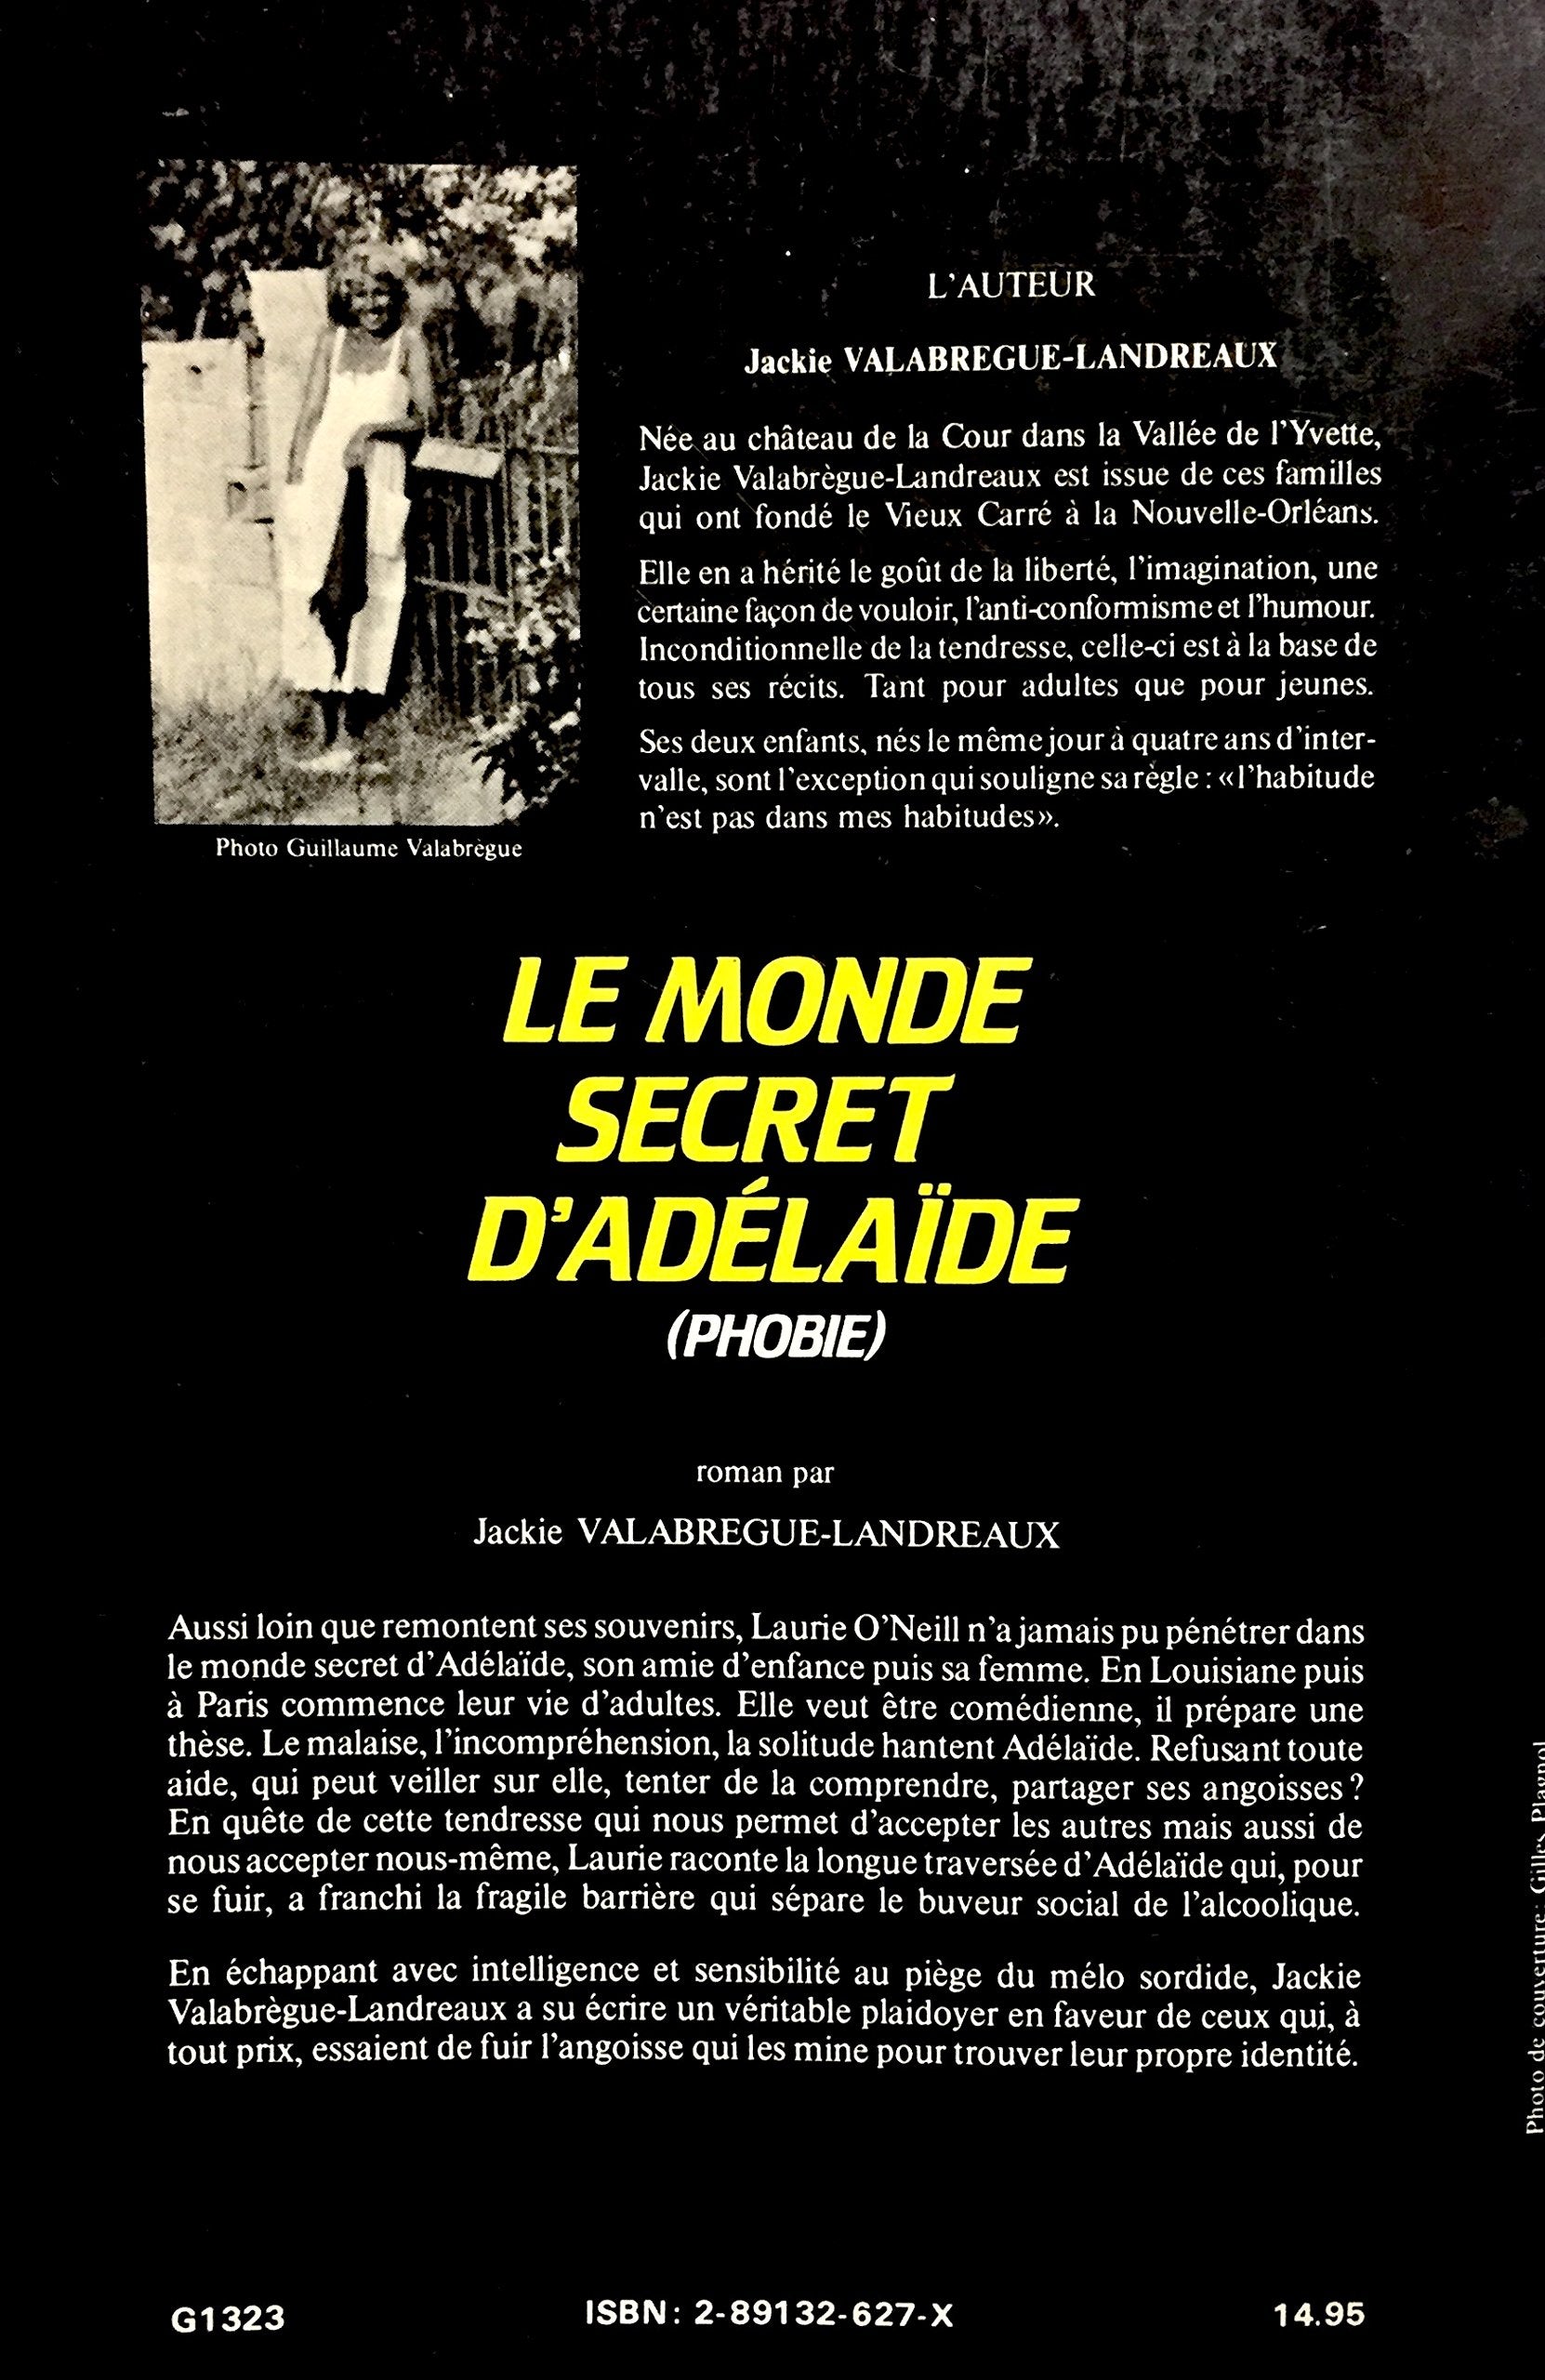 Le monde secret d'Adélaïde (phobie) (Jackie Valabrègue-Landreaux)